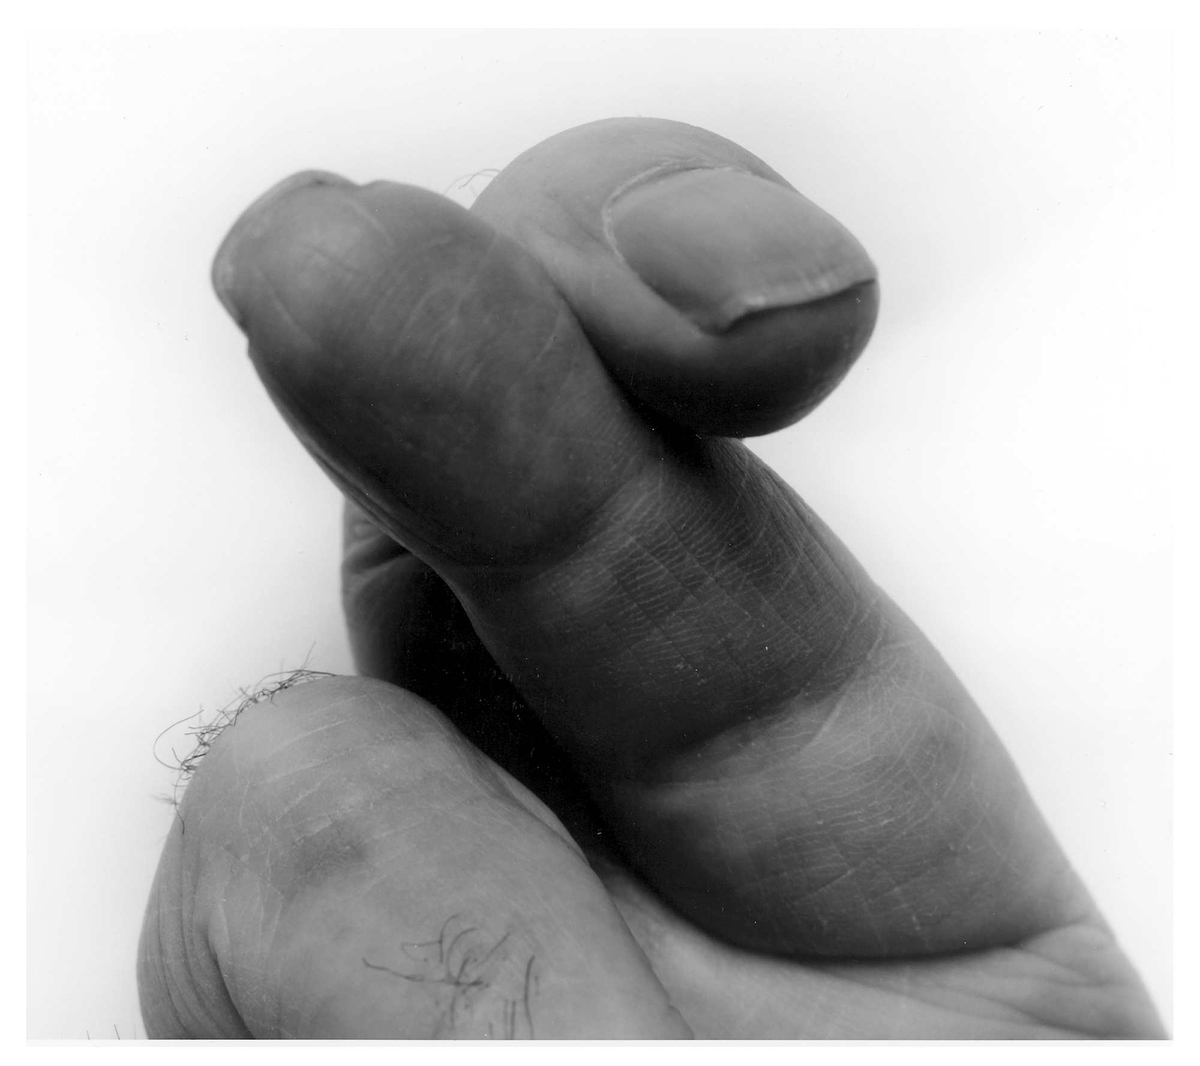 Gjennomgangsmotivet i Crossed fingers er en finger som står rett opp, som krysses eller filtrer seg i andre fingre. Med sin mørke fremtoning i kontrast til den lyse bakgrunnen, er disse oppstillingene nærmest som organiske skulpturer. Gesten hvor langefingeren vekselvis står i ensom majestet, eller er sammenfiltret med pekefingeren, har noe intenst anstrengt og nesten provoserende over seg med sin assosiasjon til det å "vise noen fingeren". Et annet moment er den nærgående og litt ubehagelige realismen som viser skitt under neglene, rynker og andre tegn på alderdom og levd liv.